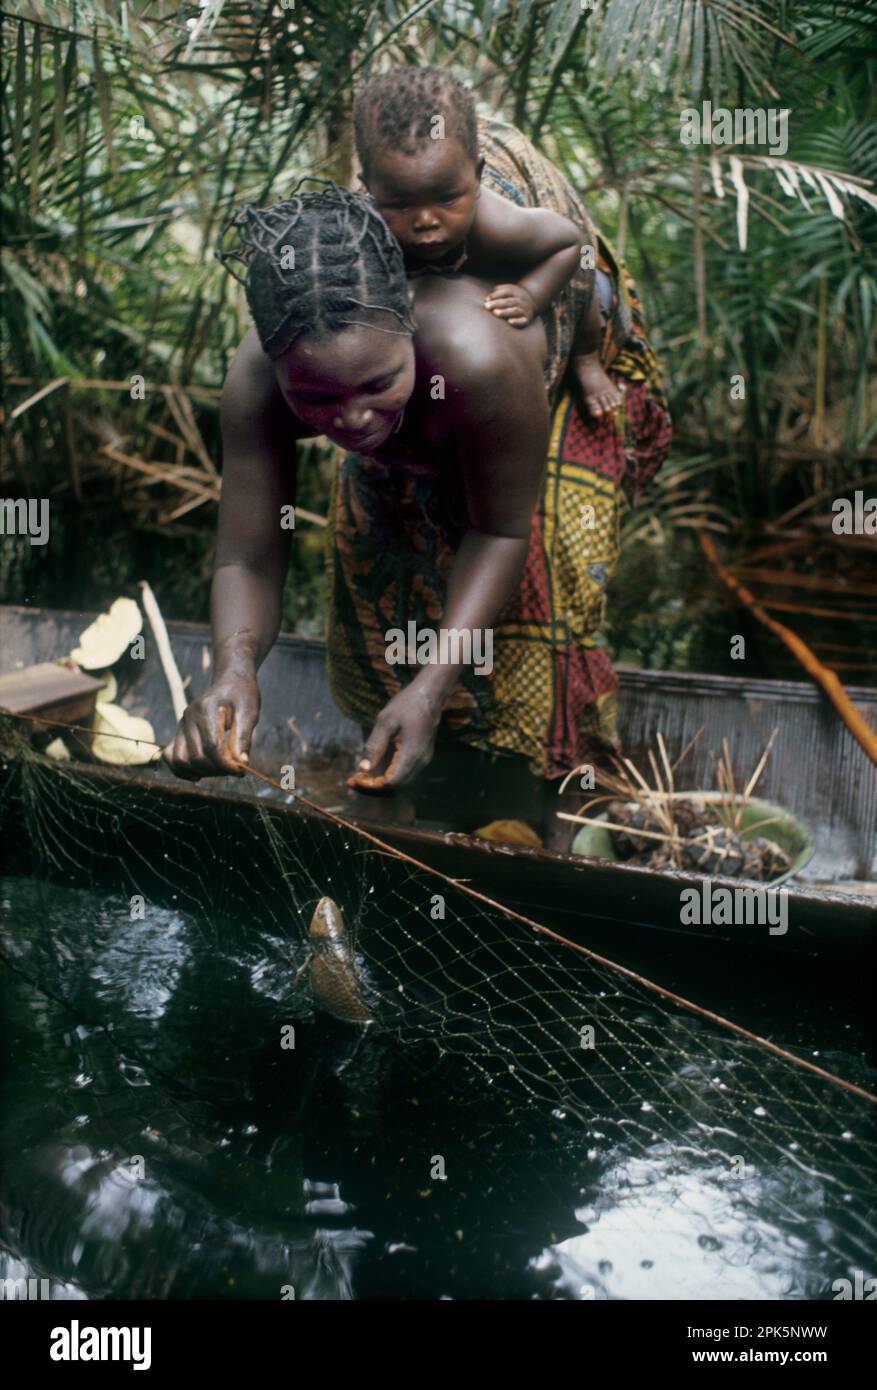 Afrika, Demokratische Republik Kongo, Provinz Equateur, Region Ngiri. Frau oder ethnische Gruppe der Libinza, die ihr Baby im Kanu trägt, während sie Fische aus dem Netz im Sumpfwald entfernt. Stockfoto